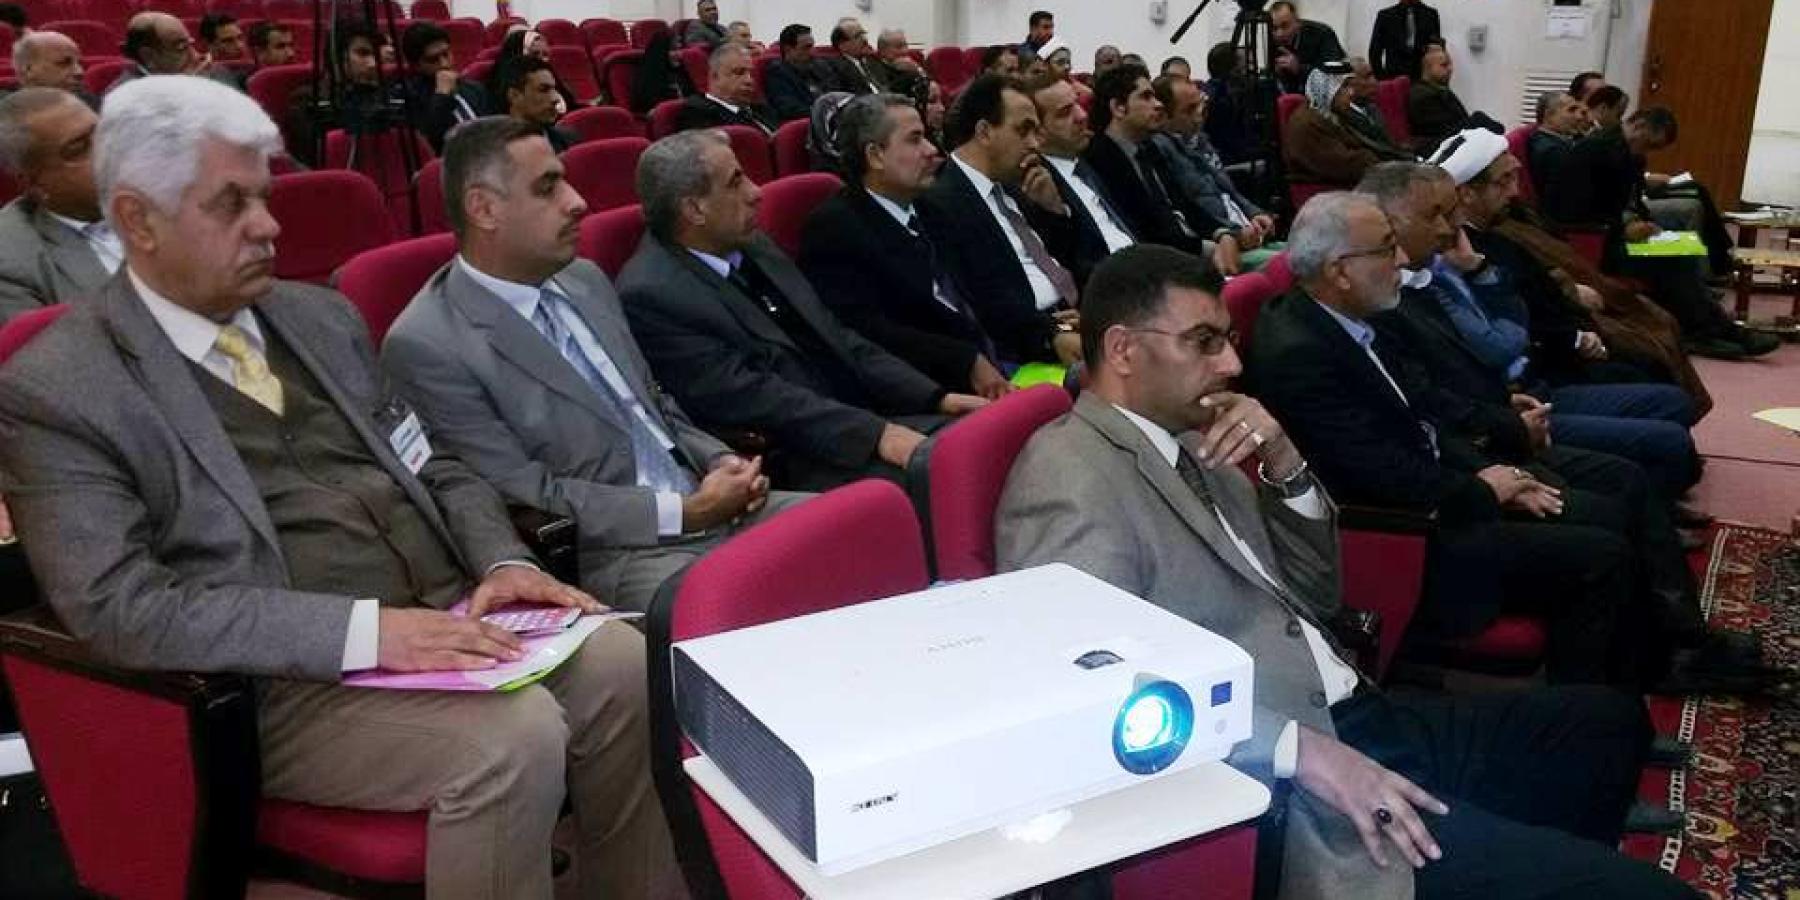 الأمانة العامة للعتبة العلوية المقدسة تشارك بوفد رسمي في افتتاح مؤتمر علمي موسوم حول مراكز الأبحاث في العراق